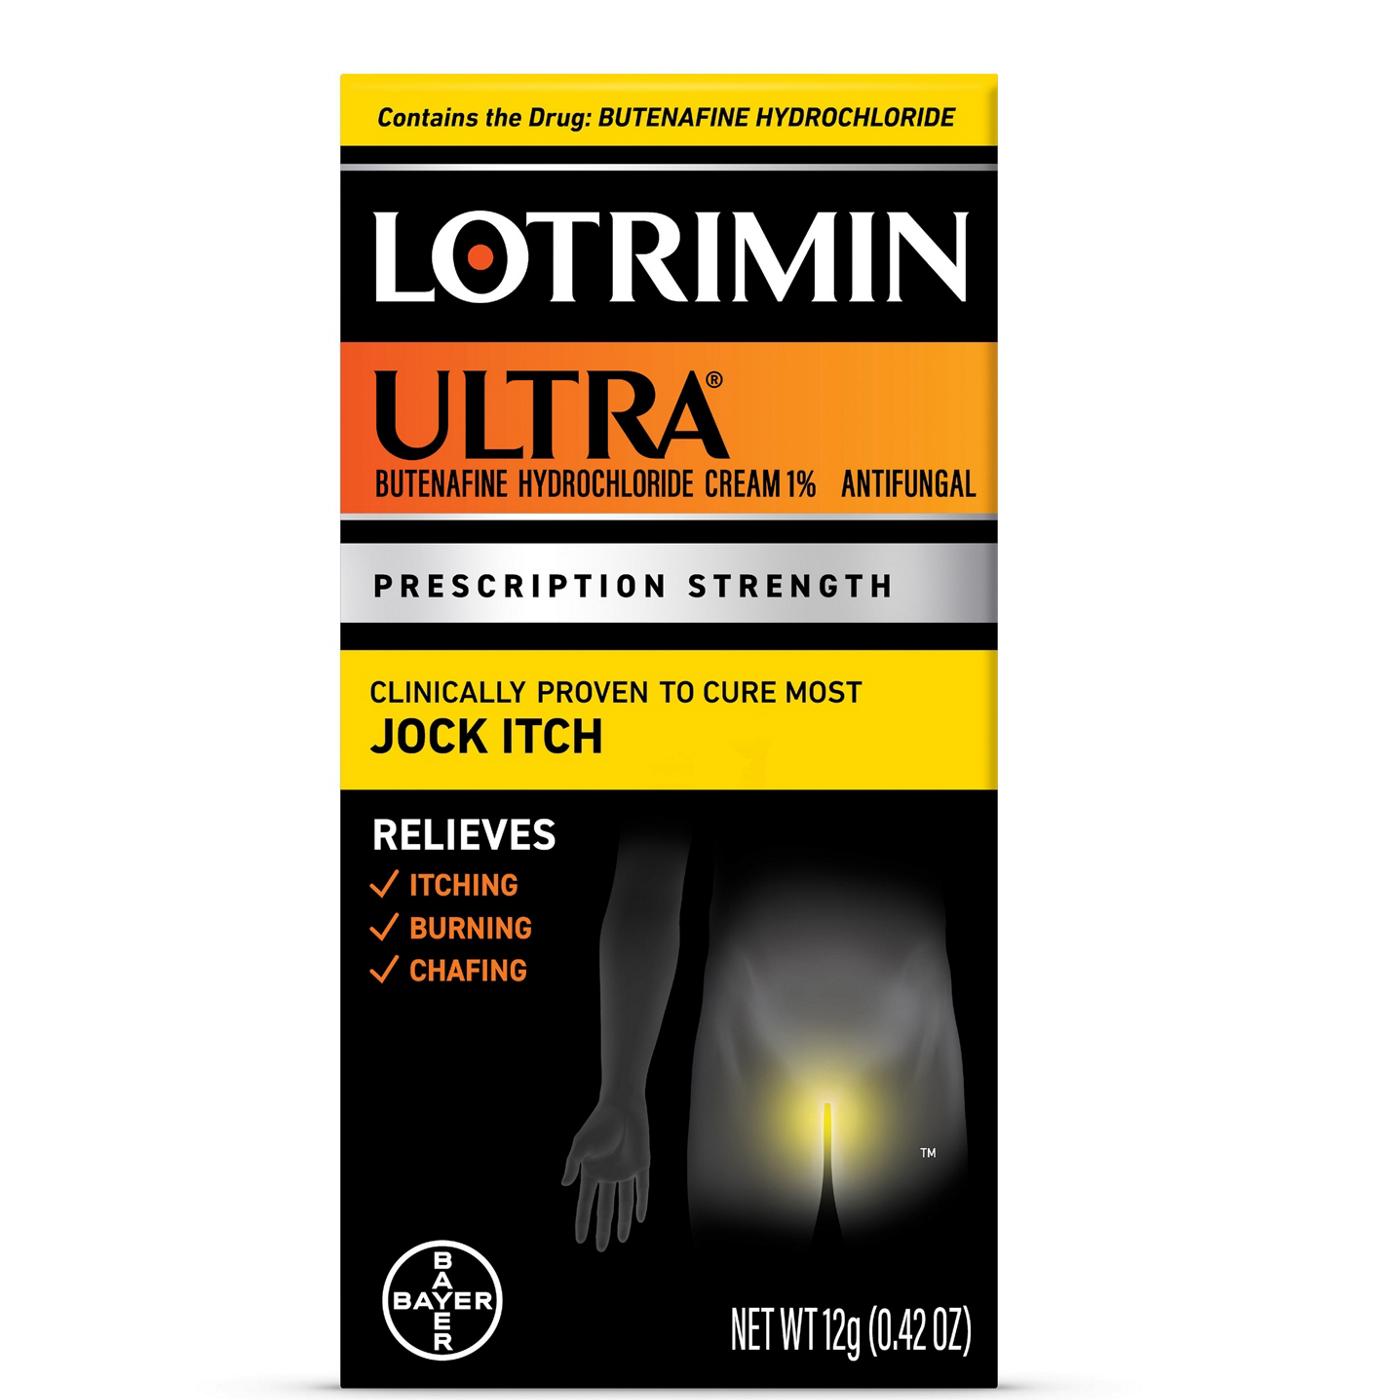 Lotrimin Ultra Prescription Strength Ultra Butenafine Hydrochloride Cream; image 1 of 7